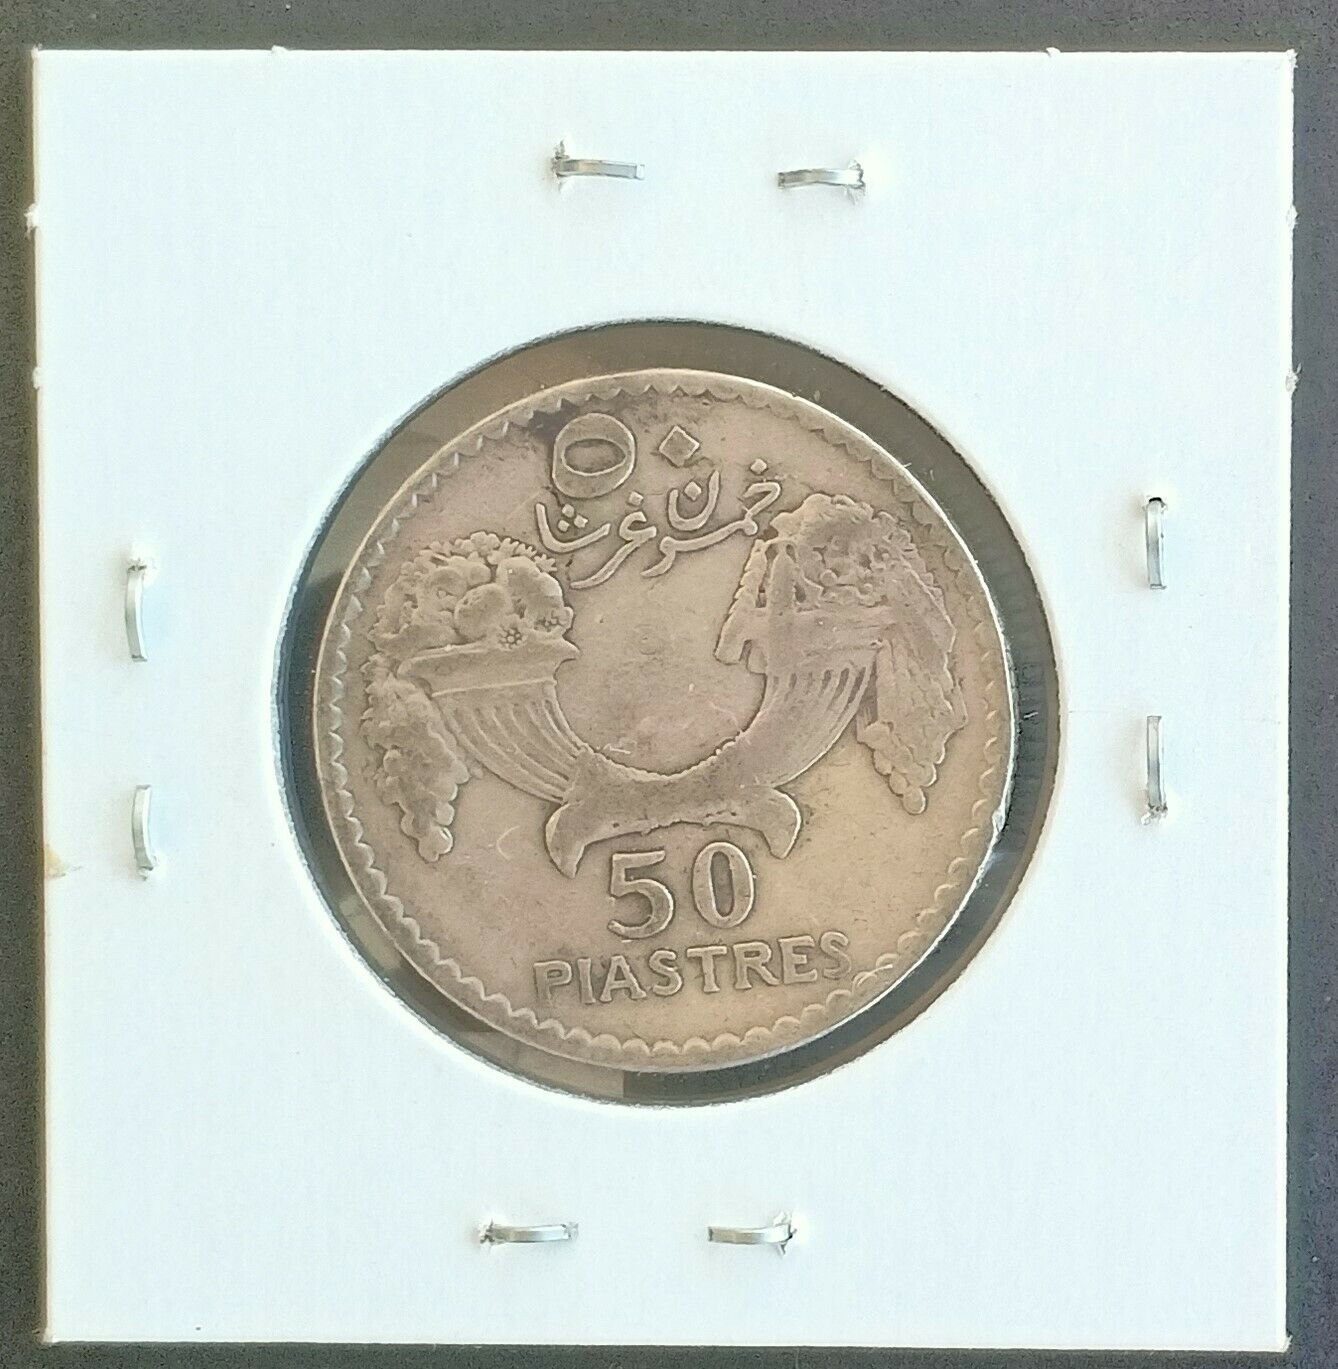 Lebanon 1929 25 Piastres Silver Coin - High Grade